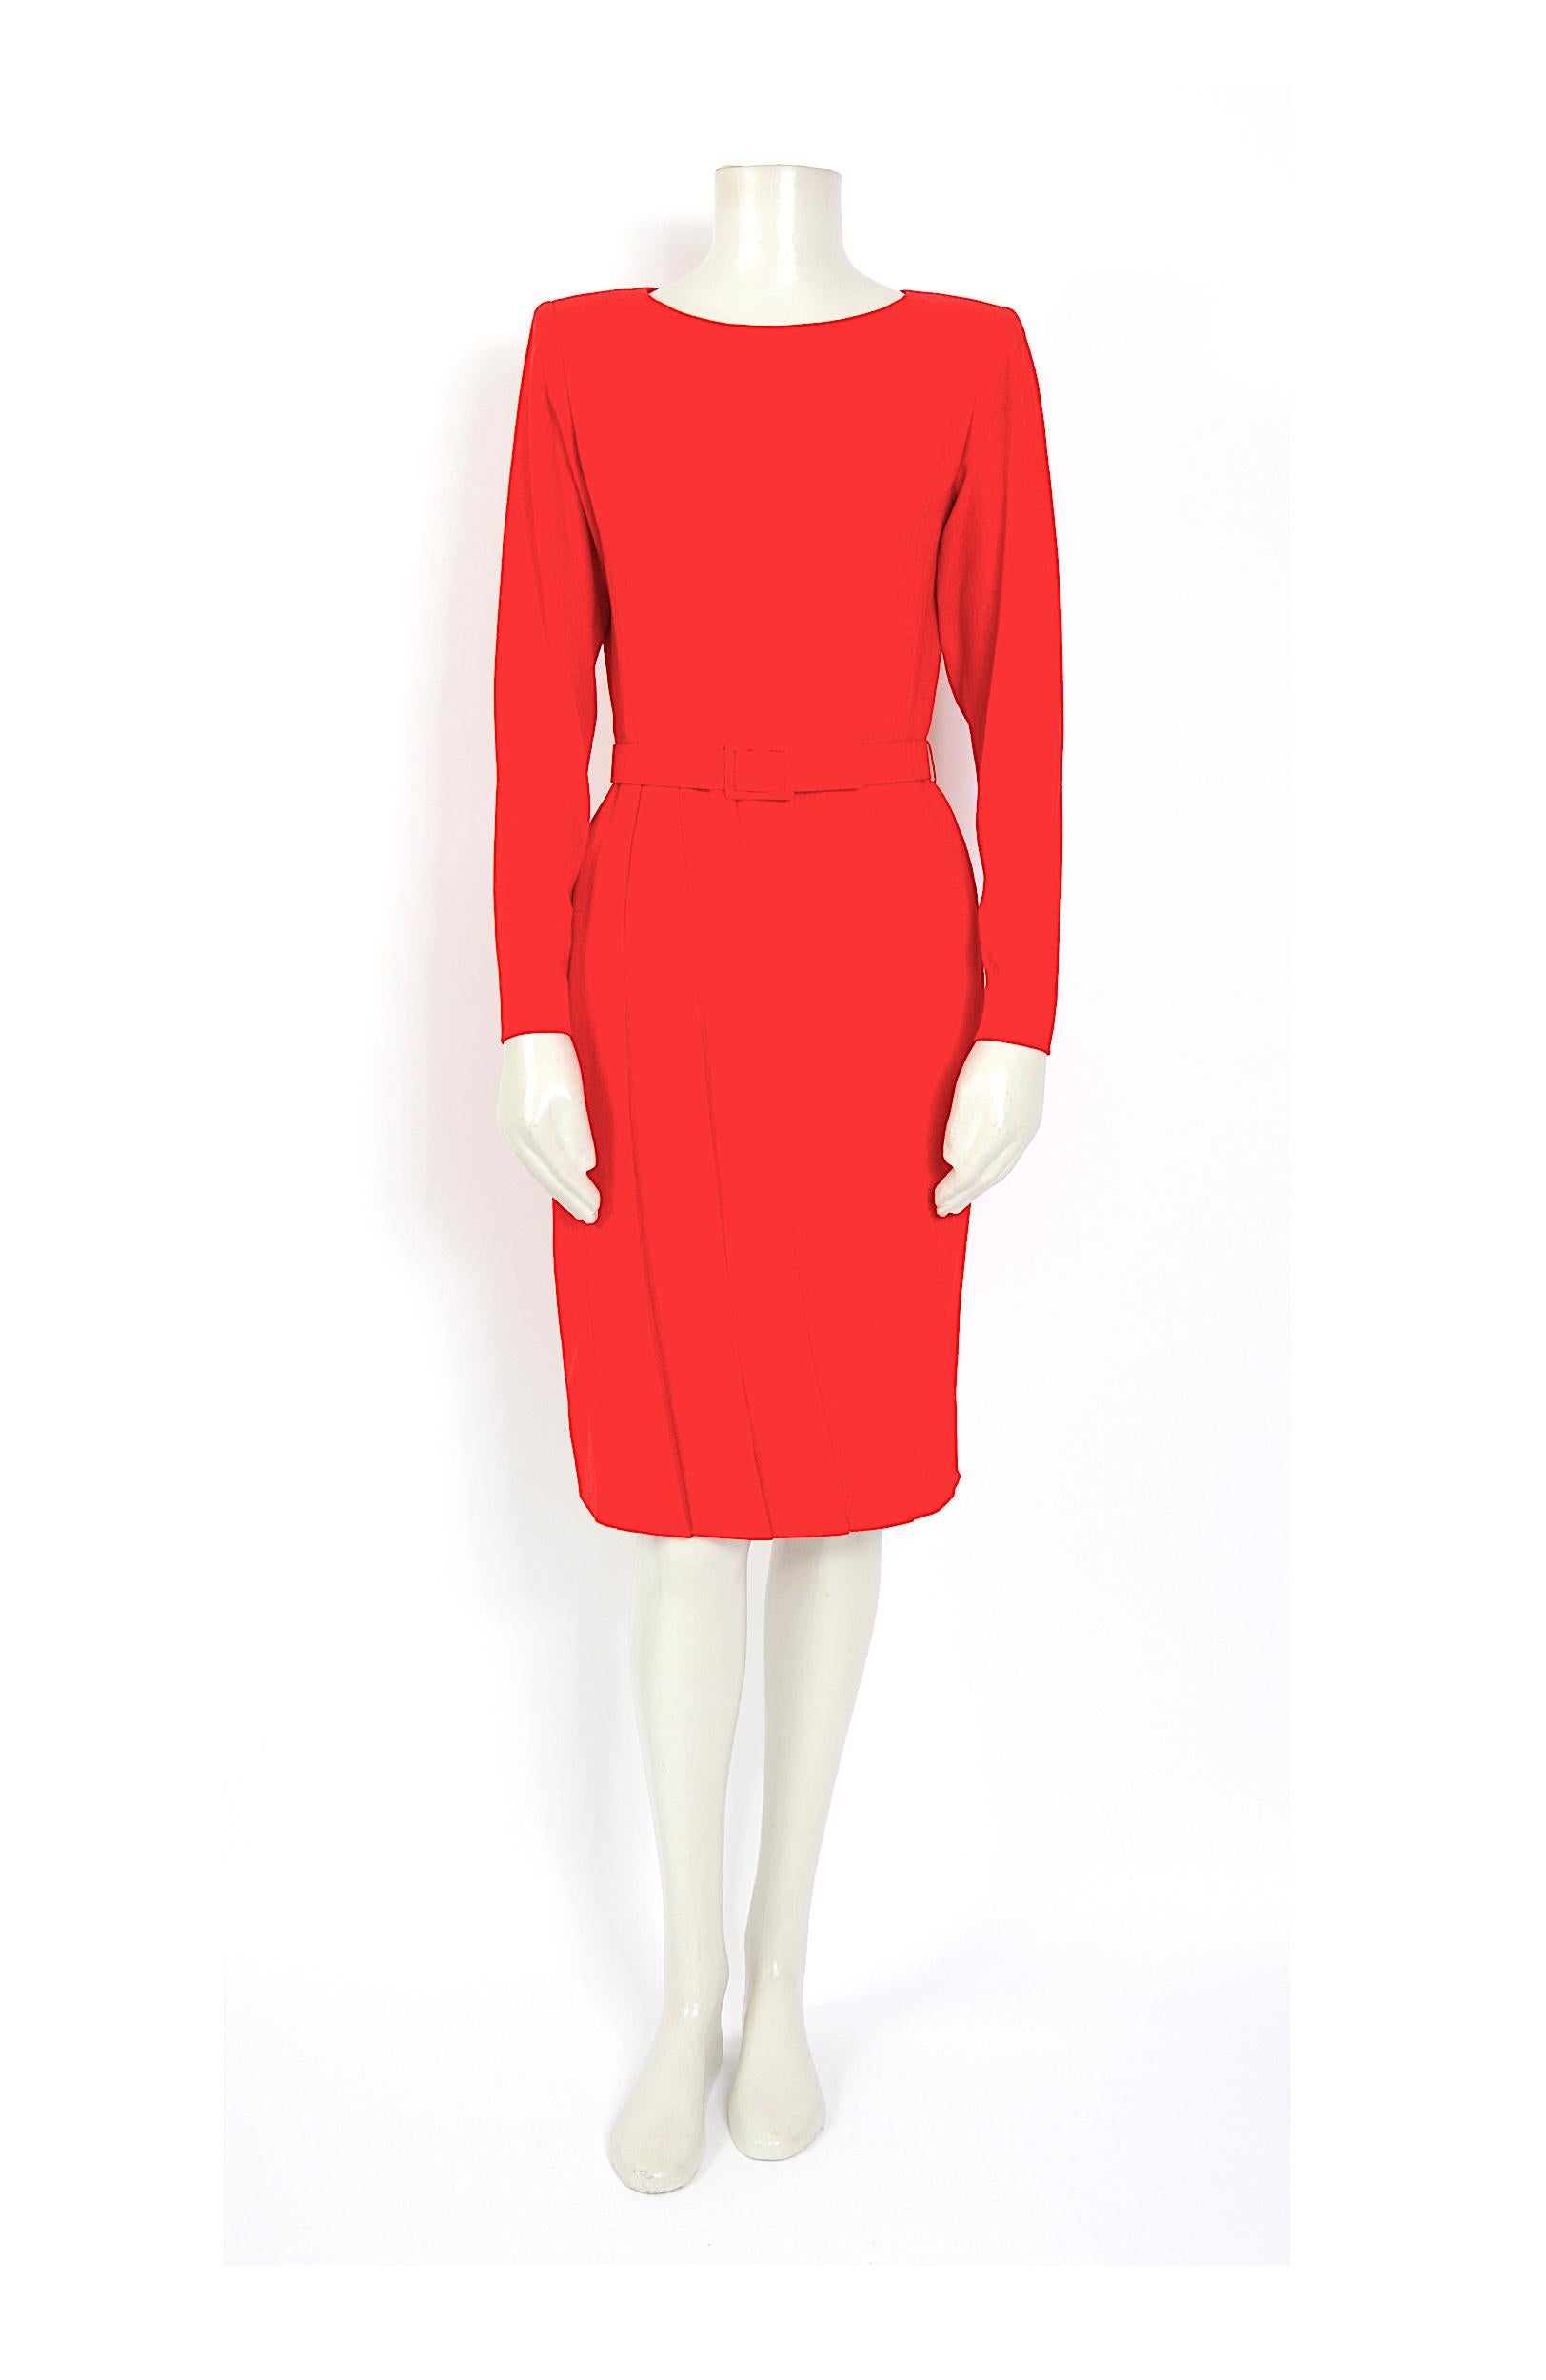 Jolie robe en crêpe rouge corail à jupe plissée de Lanvin, accompagnée d'une ceinture assortie.
Réalisé dans un mélange de 10% laine - 45%cupro - 30%acétate - 
La robe est entièrement doublée d'une matière 100 % soie
Fabriqué en France  - 
Taille